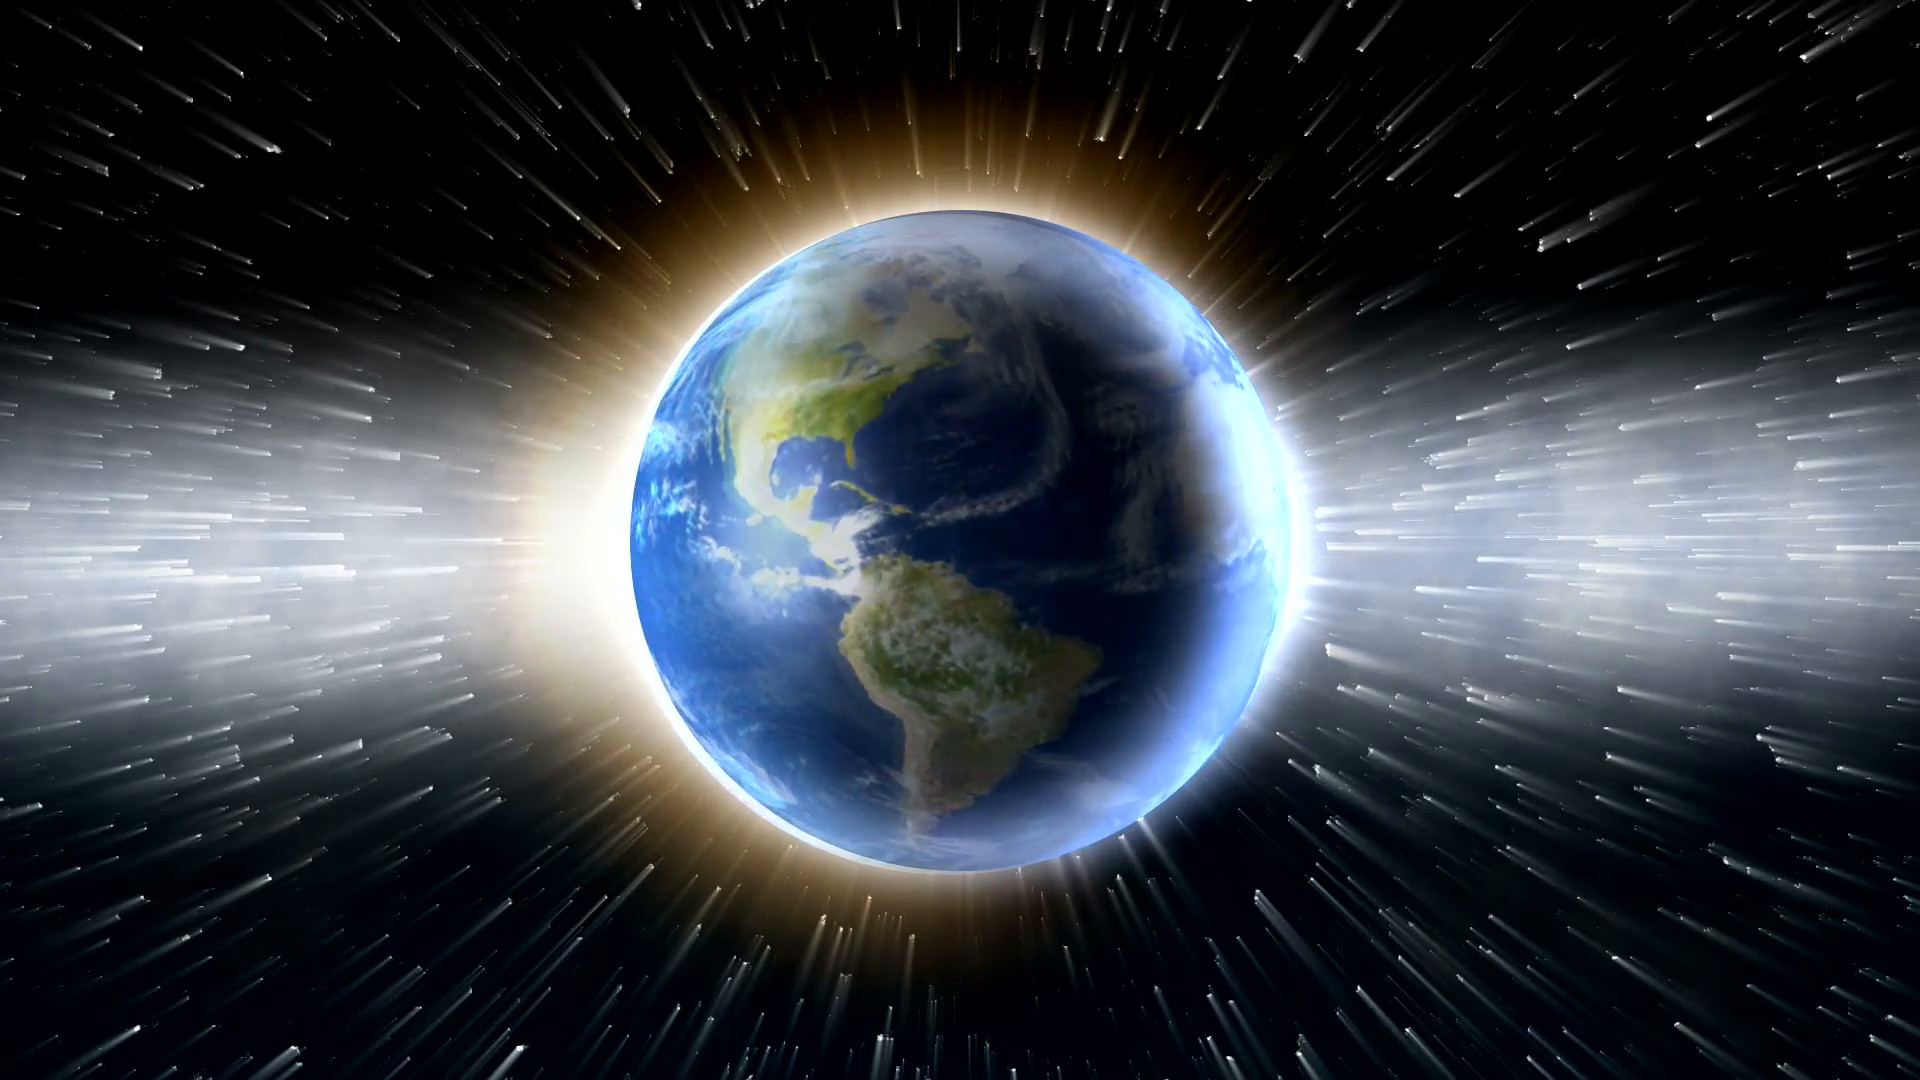 La Tierra está girando más rápido que hace 50 años. ¡Entérate!